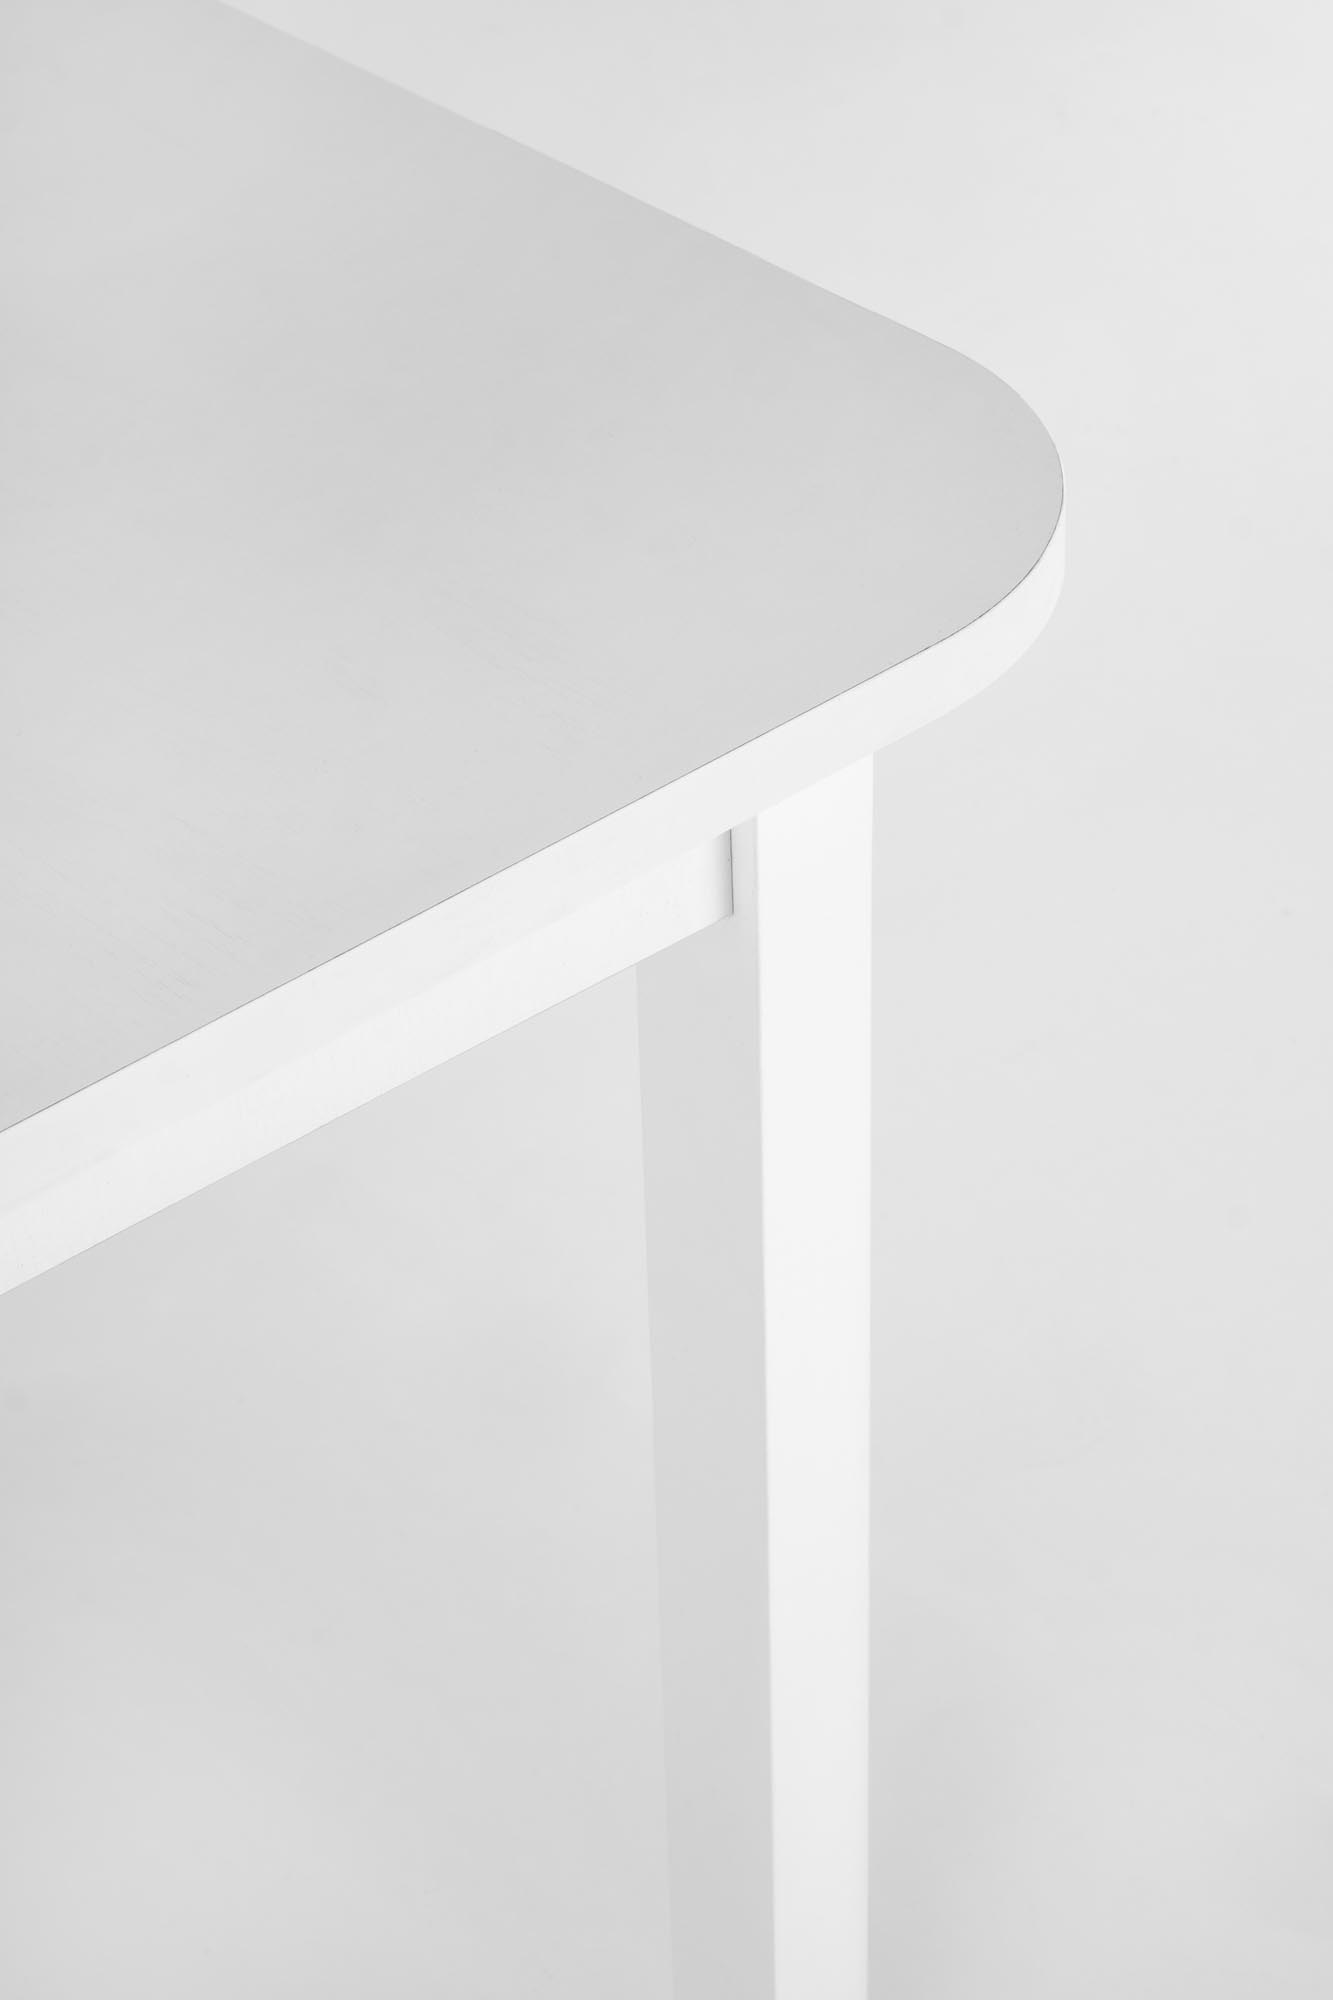 FLORIAN összecsukható asztal, asztallap - fehér, lábak - fehér florian stůl rozkladany Deska - Bílý, Nohy - Bílý